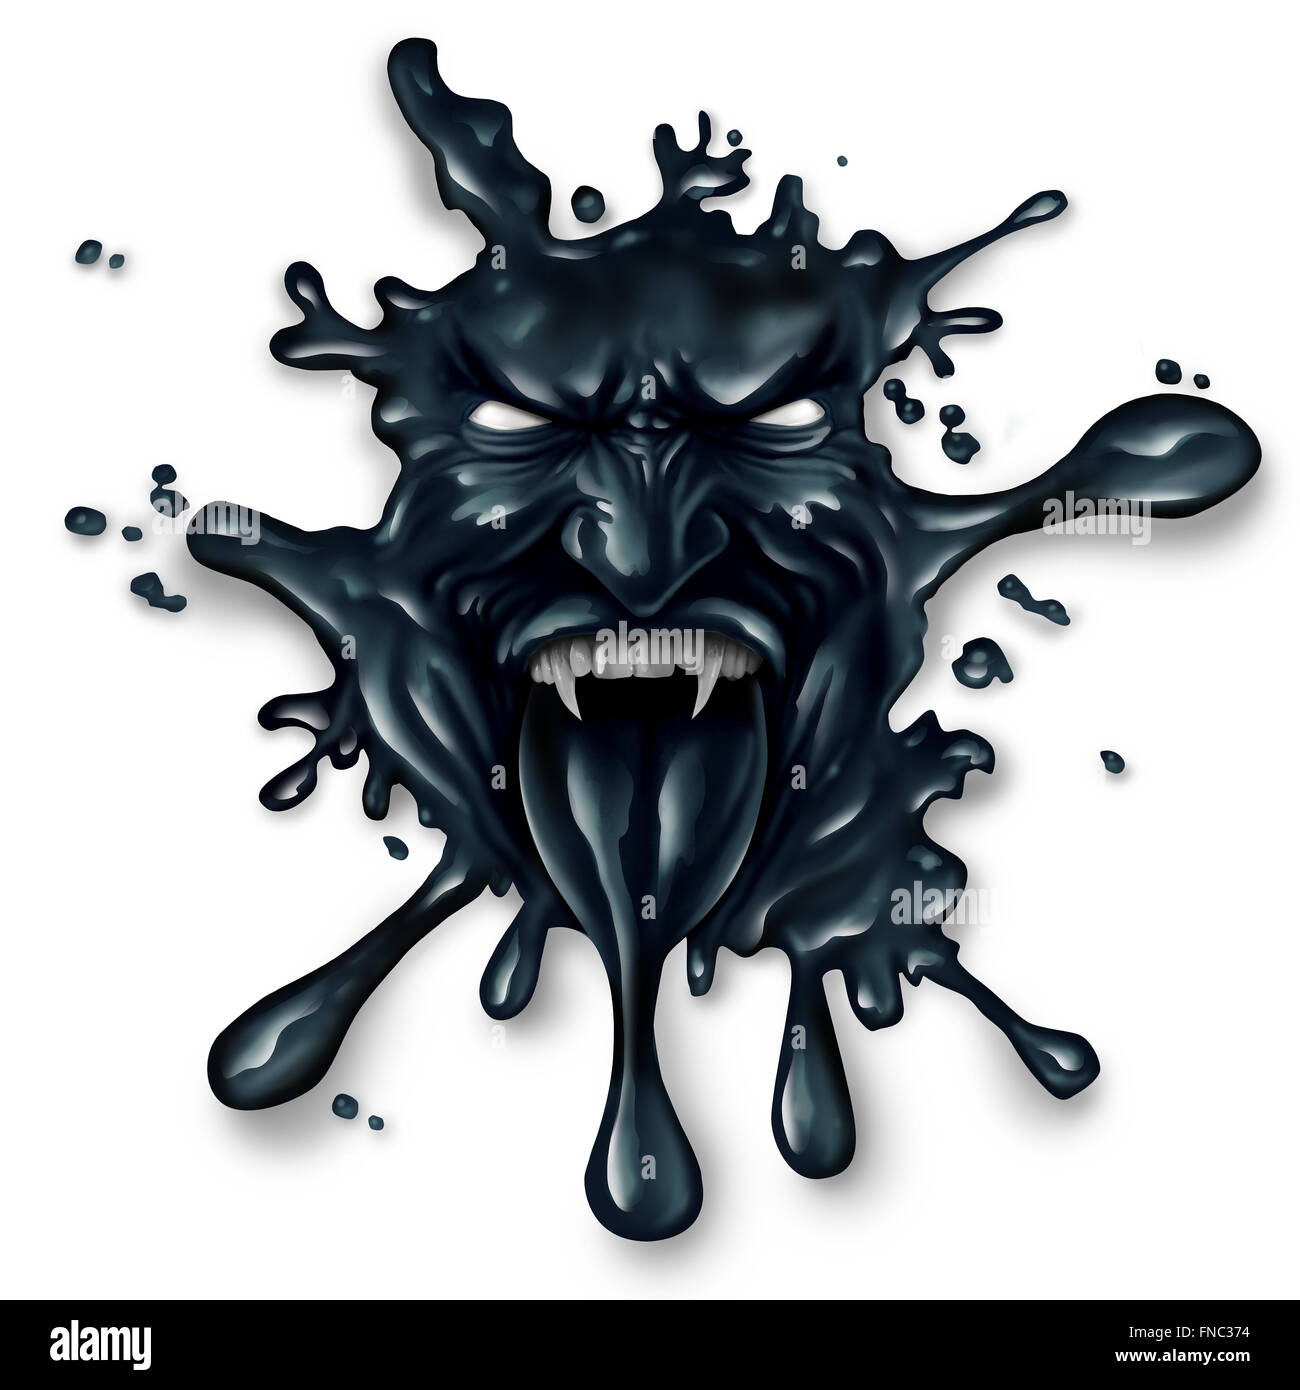 Beängstigend Öl verschütten Splash als Erdöl als Symbol für fossile Brennstoffe und grobe Furcht Energiekonzept auf einem weißen Hintergrund mit einem Monster Gesicht leckt. Stockfoto